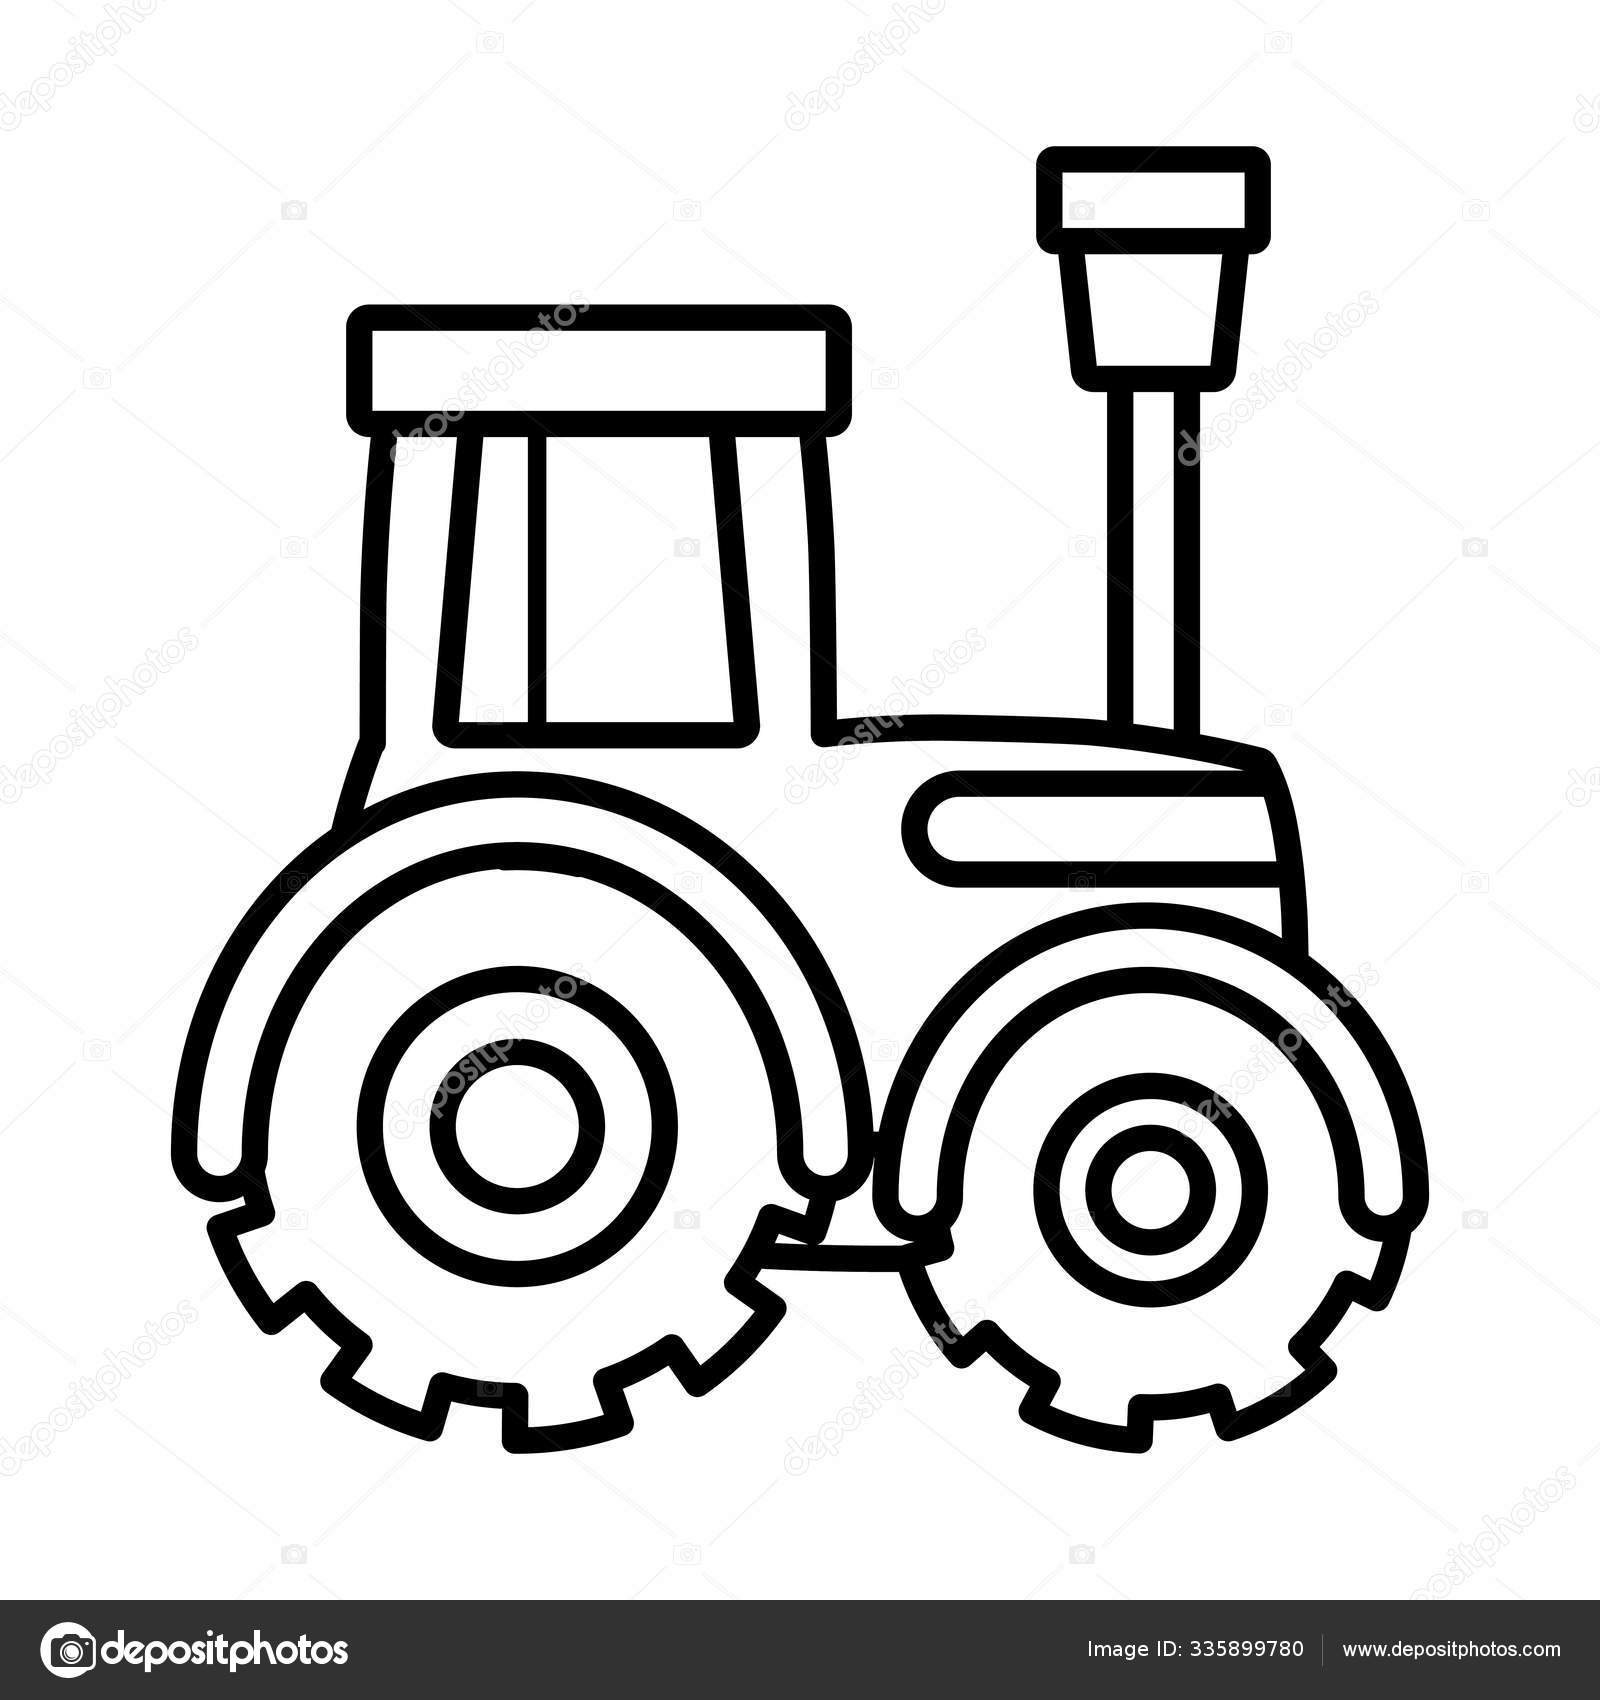 Trator caminhão máquina fazenda cartoon linha grossa imagem vetorial de  stockgiu© 335899780